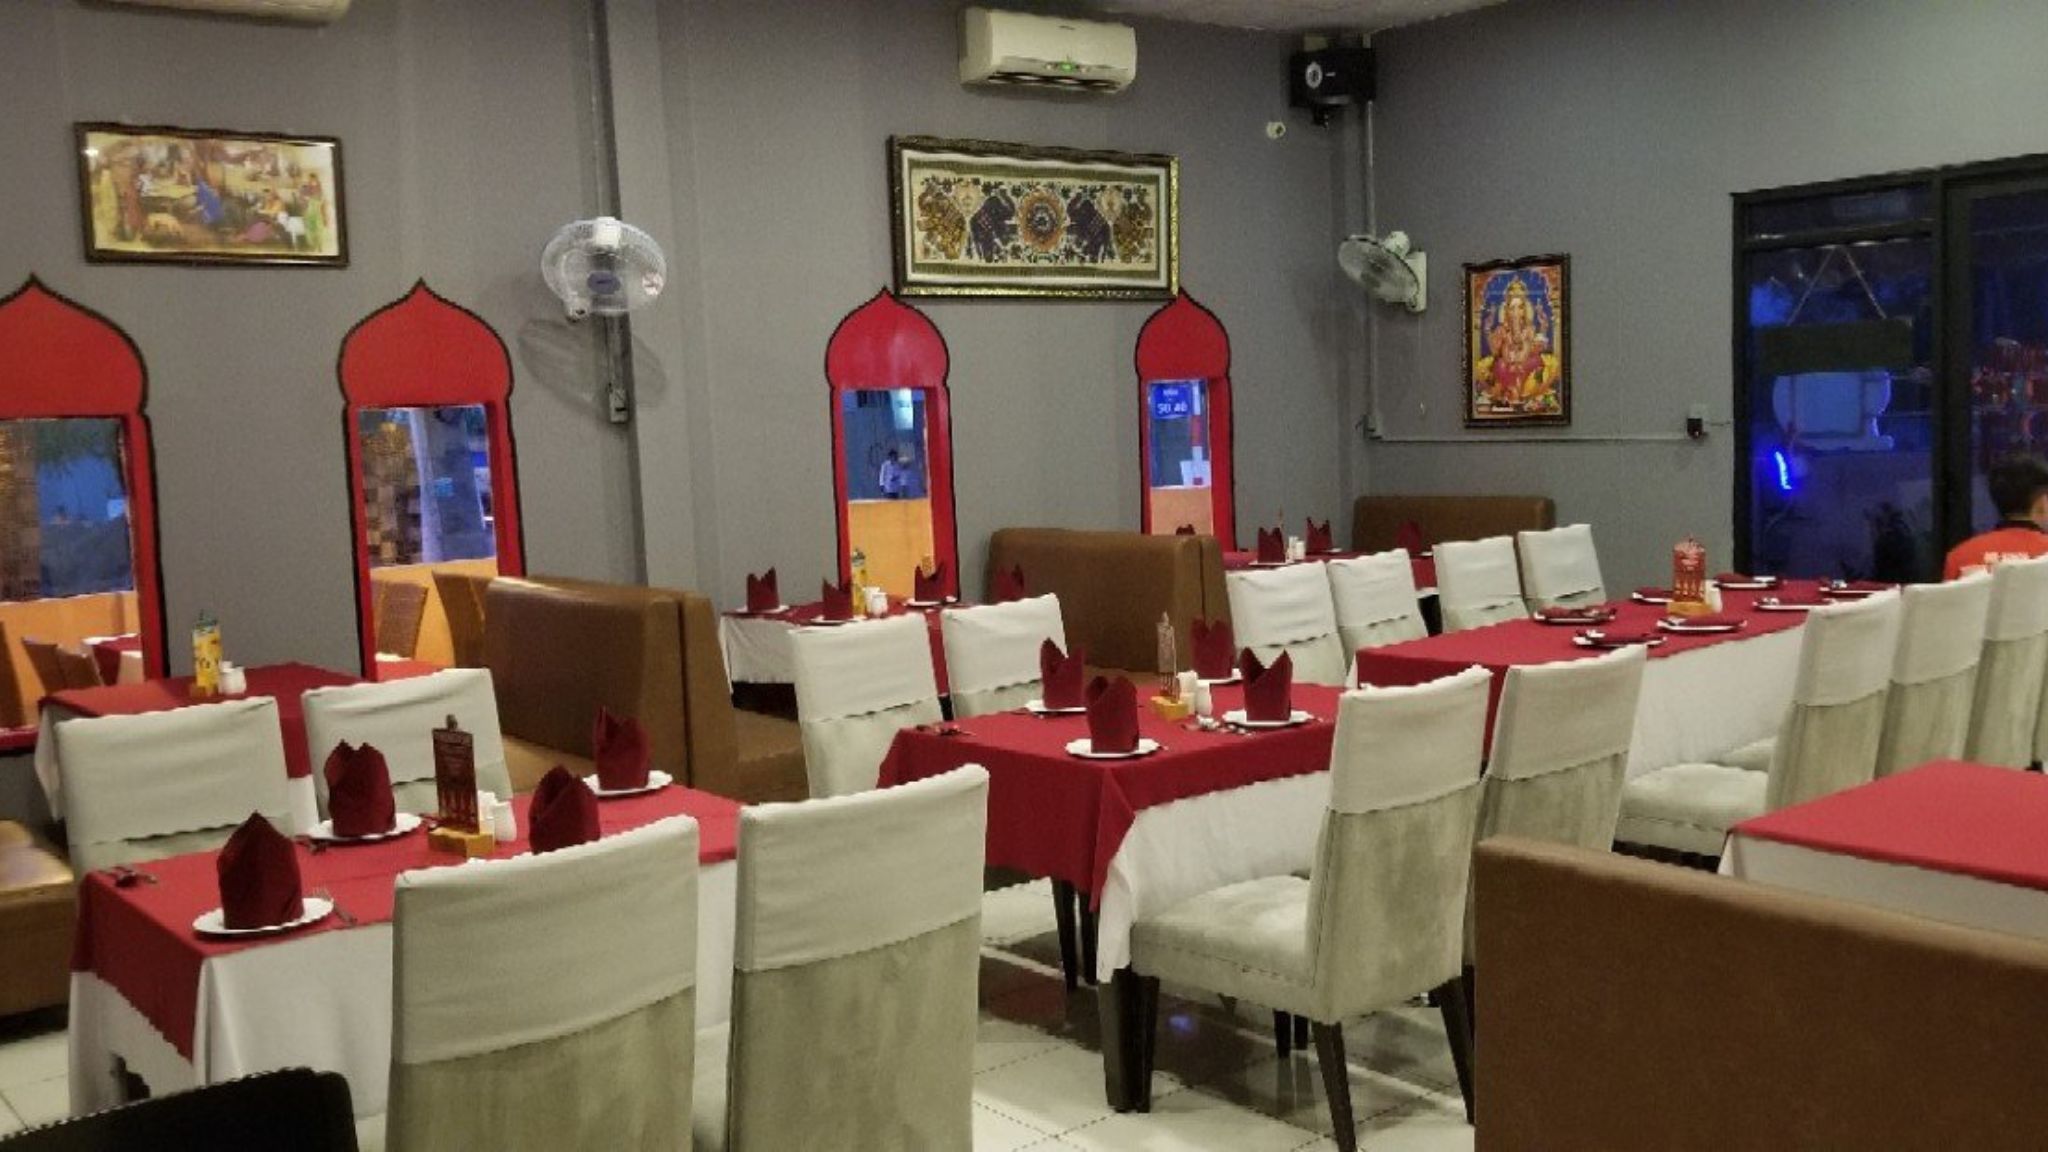 Mr Singh Indian Restaurant